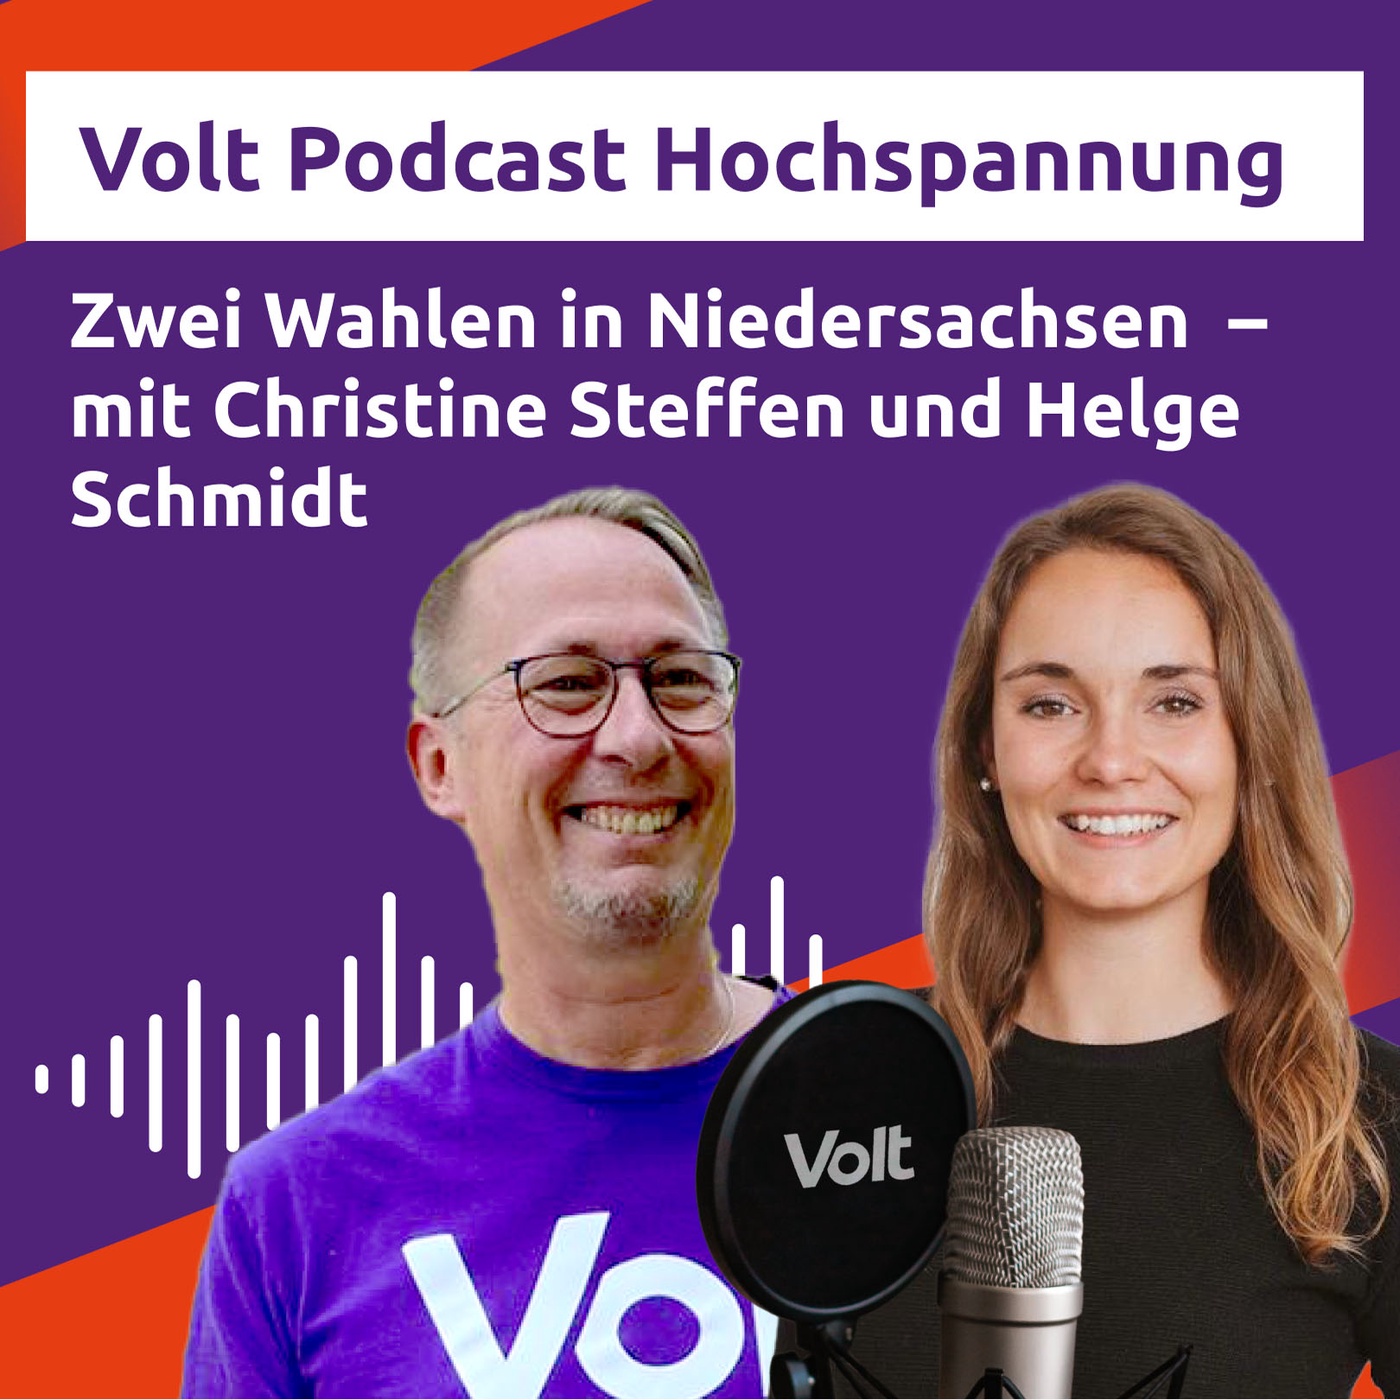 Zwei Wahlen in Niedersachsen - Kommunalwahl und Bundestagswahl im September 2021 - Hochspannung Podcast